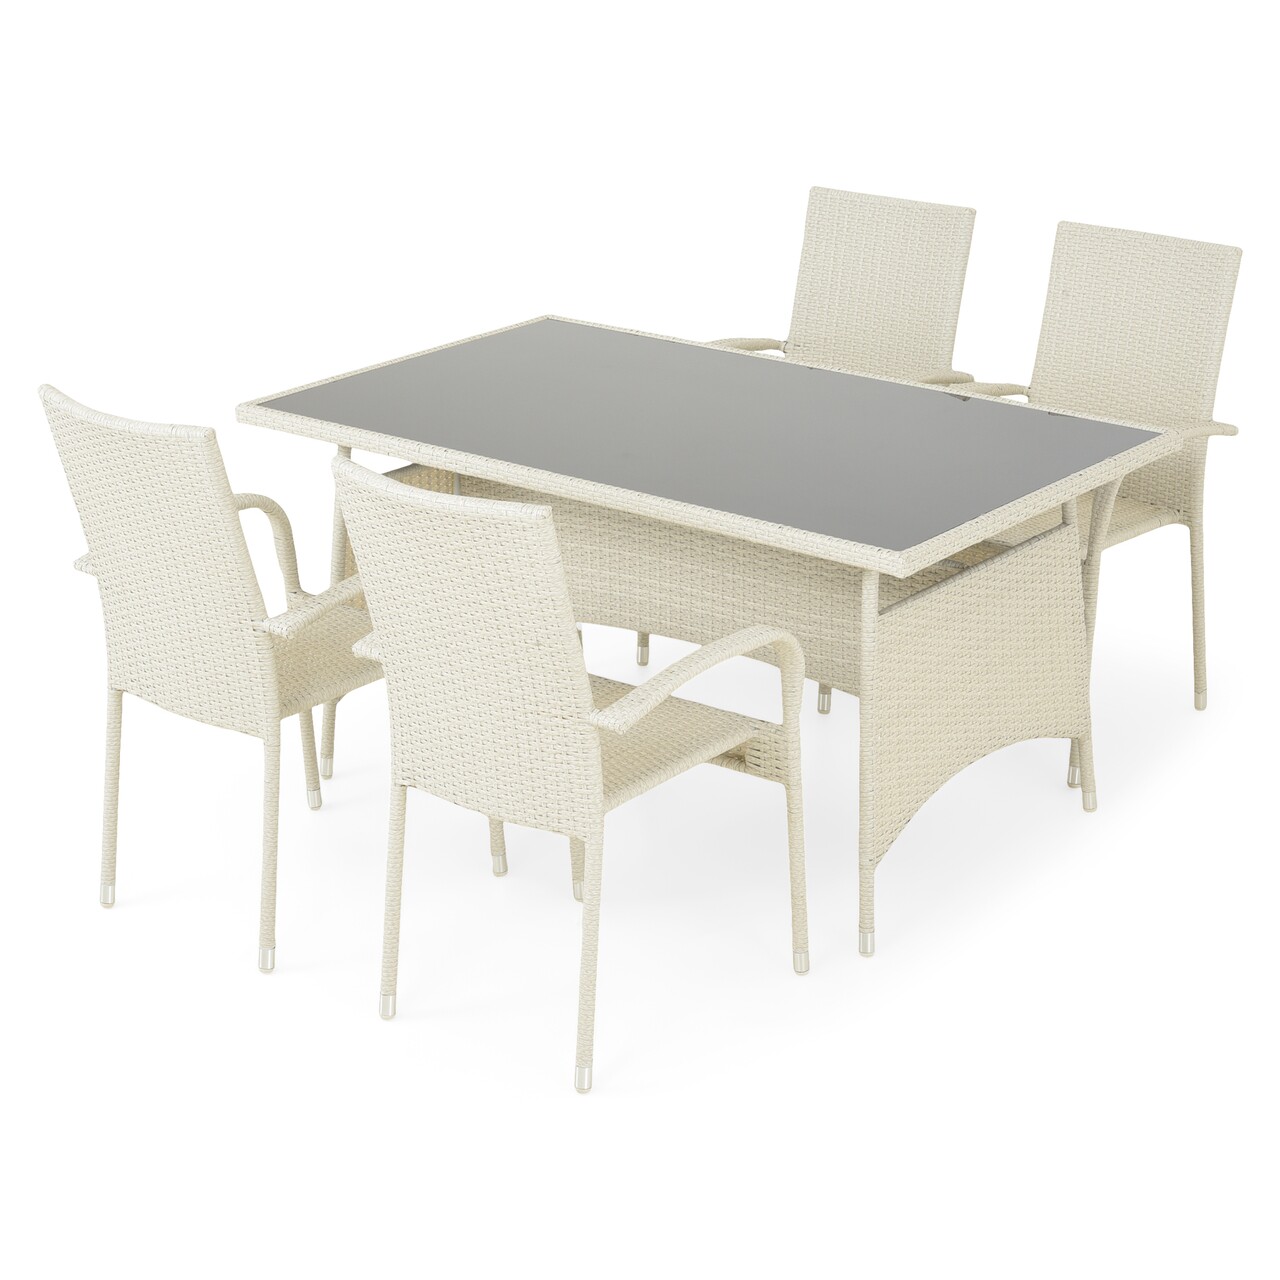 Presley Kerti/terasz szett, asztal+ 4 szék, acél, szürke